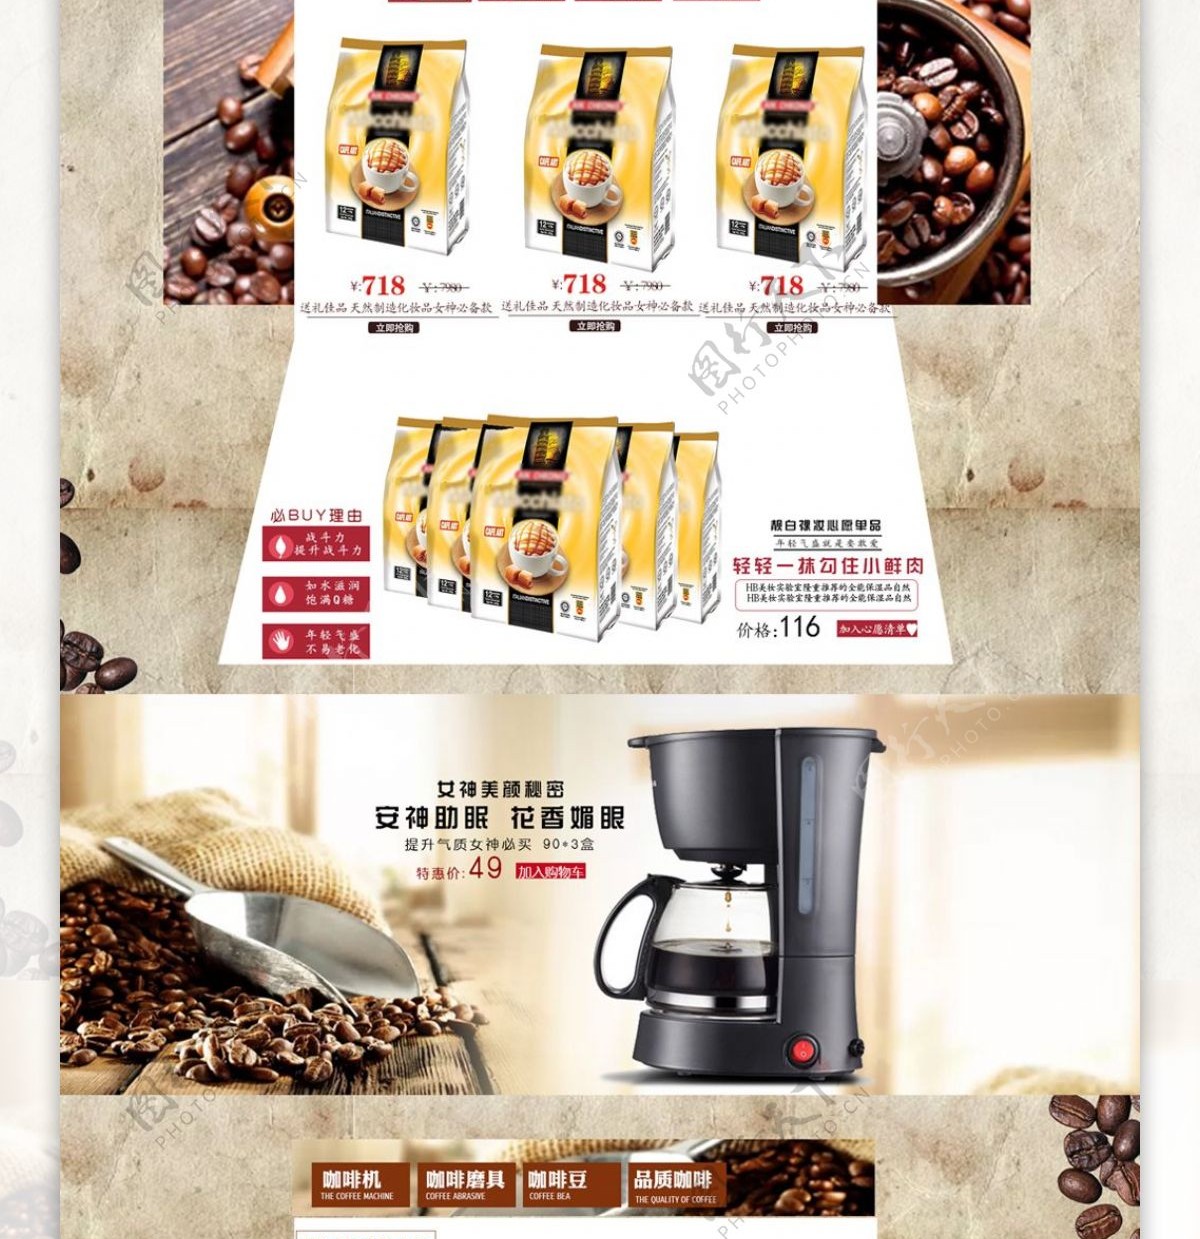 首页咖啡清新高档咖啡豆咖啡机简约牛皮纸